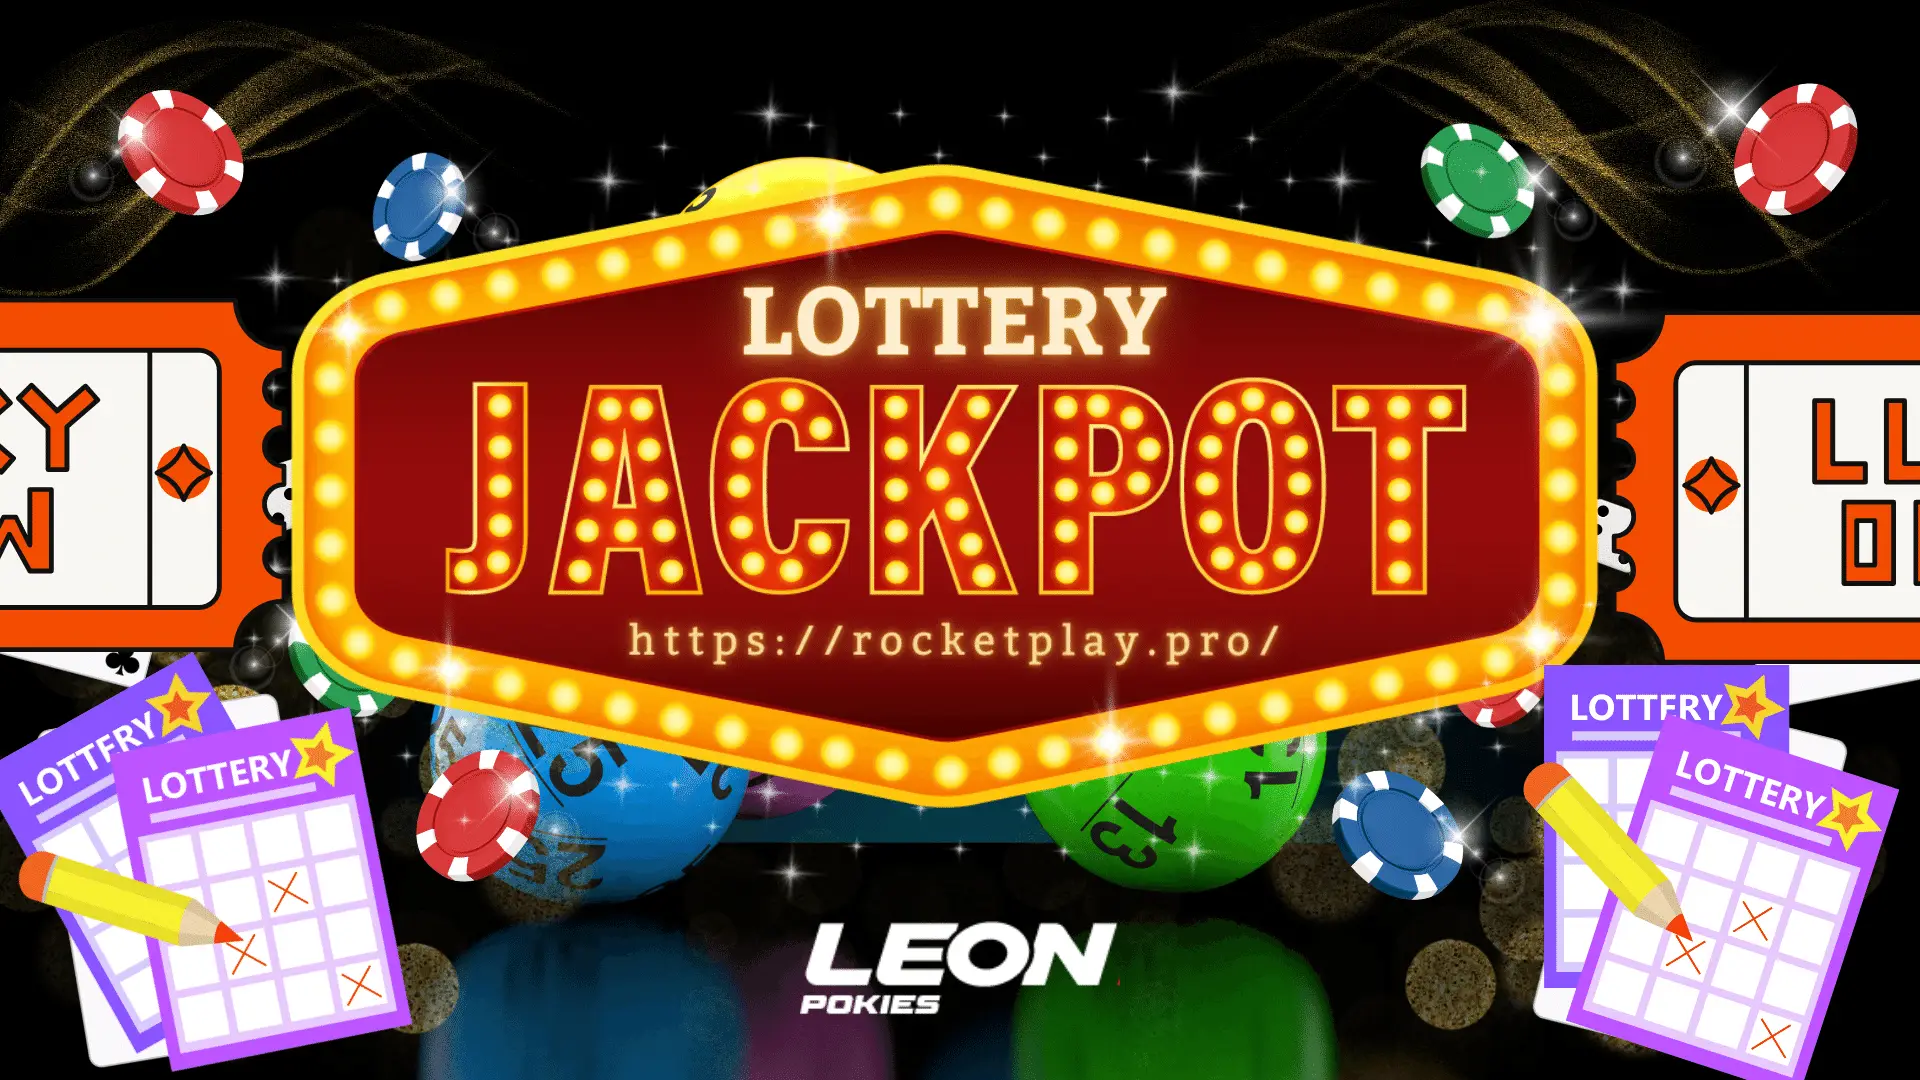 rocketplay lottery